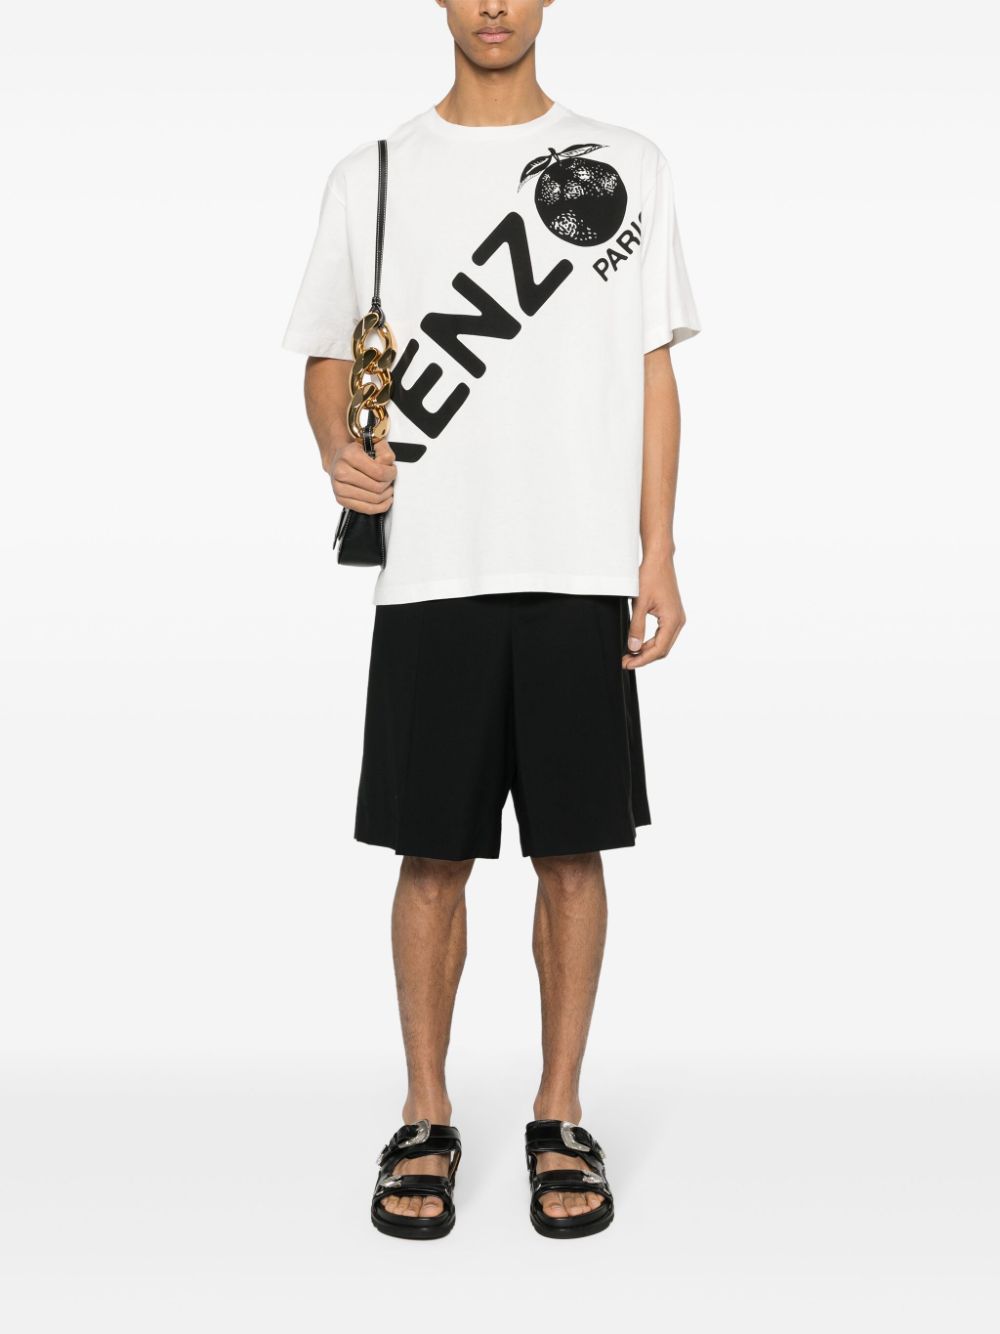 Kenzo logo-print cotton T-shirt - Wit